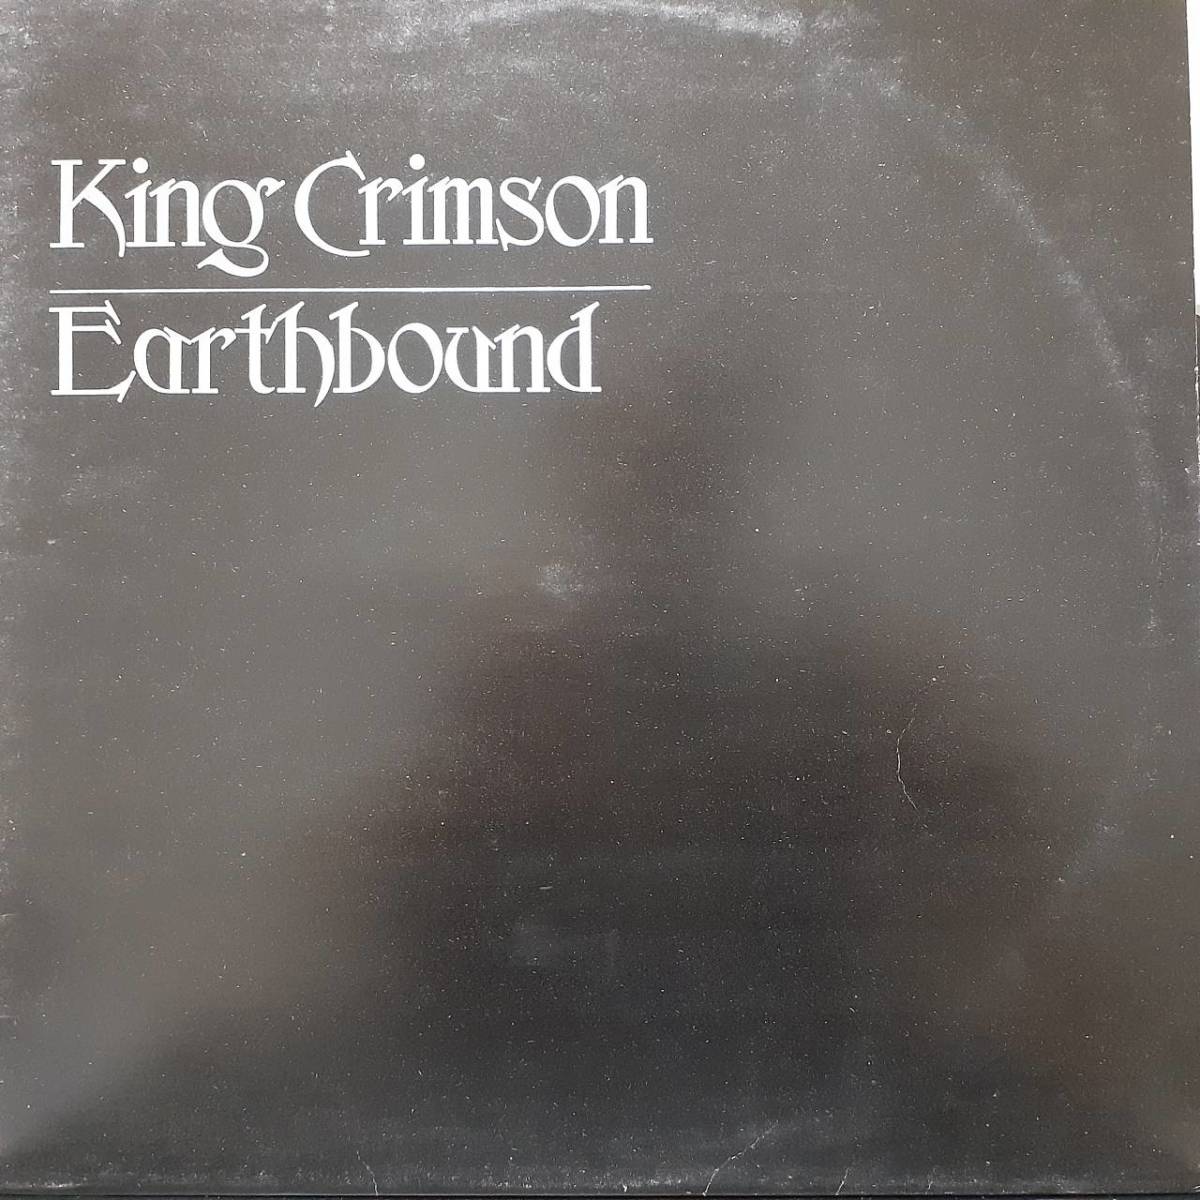  Британия ISLANDo Rige LP! большой I (I)* этикетка!mato ветка 1U.2U!King Crimson / Earthbound 1972 год HELP6 King Crimson 21 век. . бог ненормальность человек 